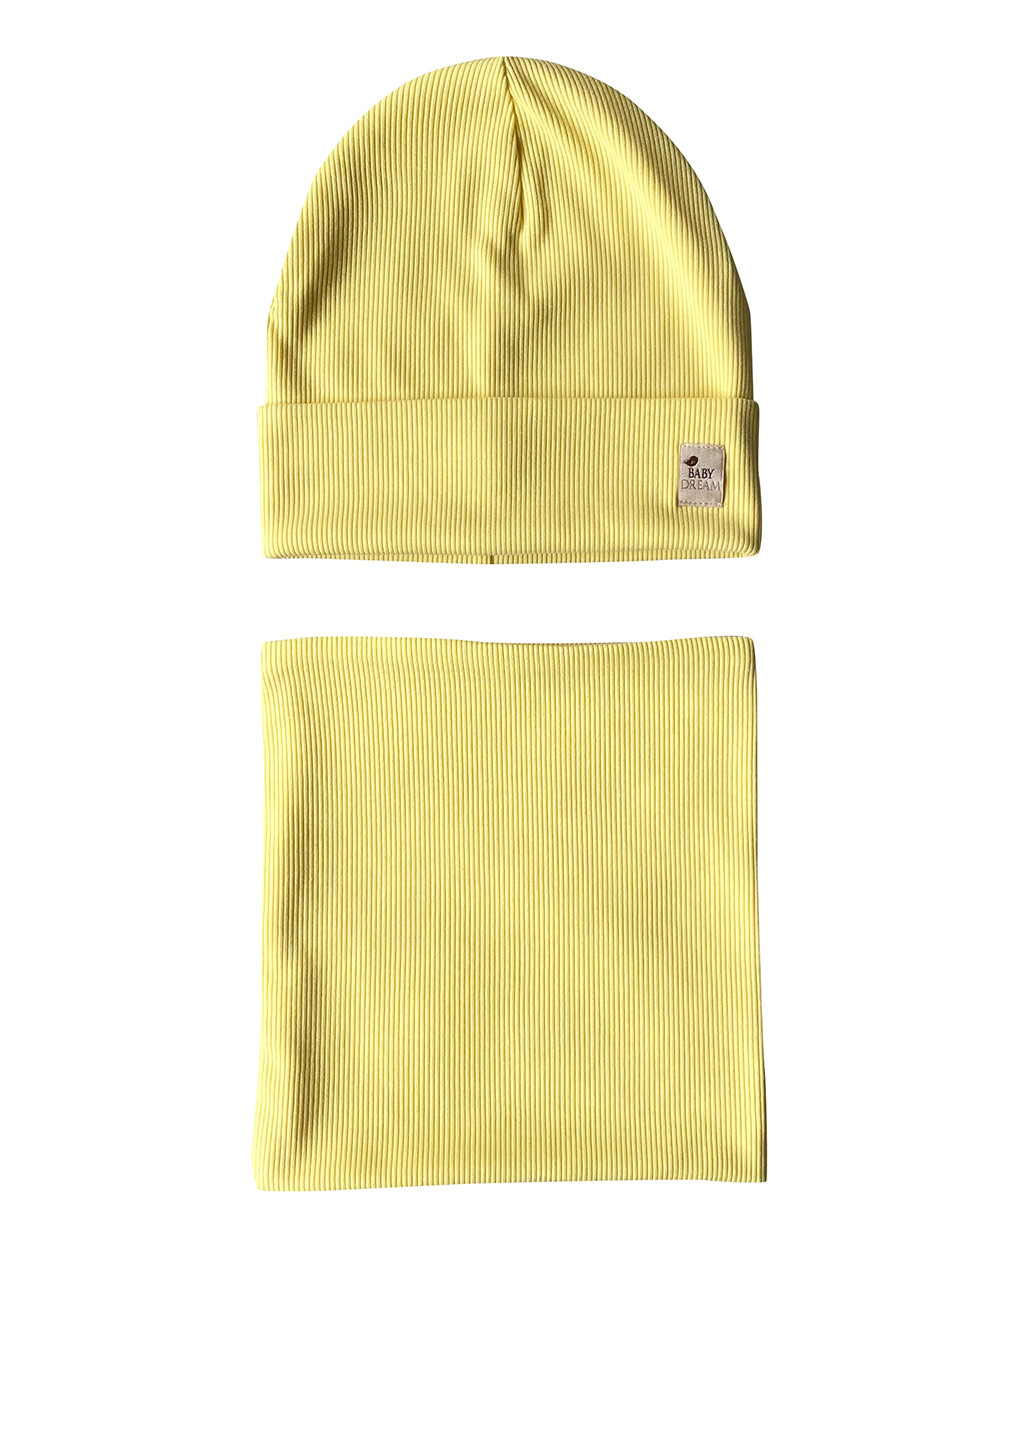 Комплект (шапка, шарф-снуд) Babydream шапка + шарф-снуд однотонные жёлтые кэжуалы хлопок, трикотаж